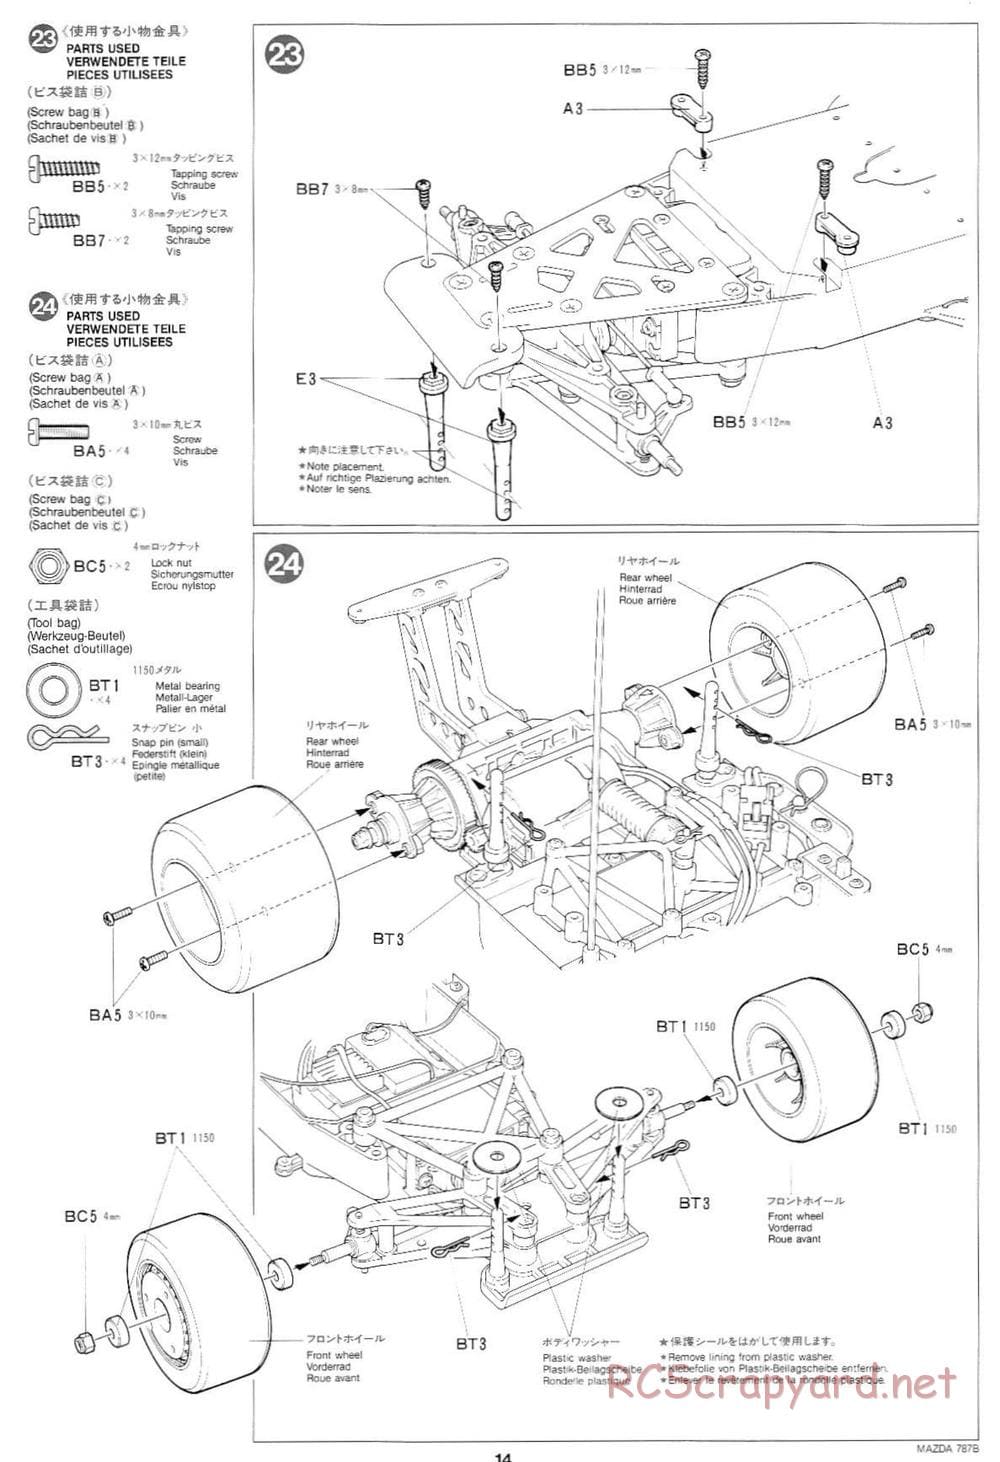 Tamiya - Mazda 787B - Group-C Chassis - Manual - Page 14